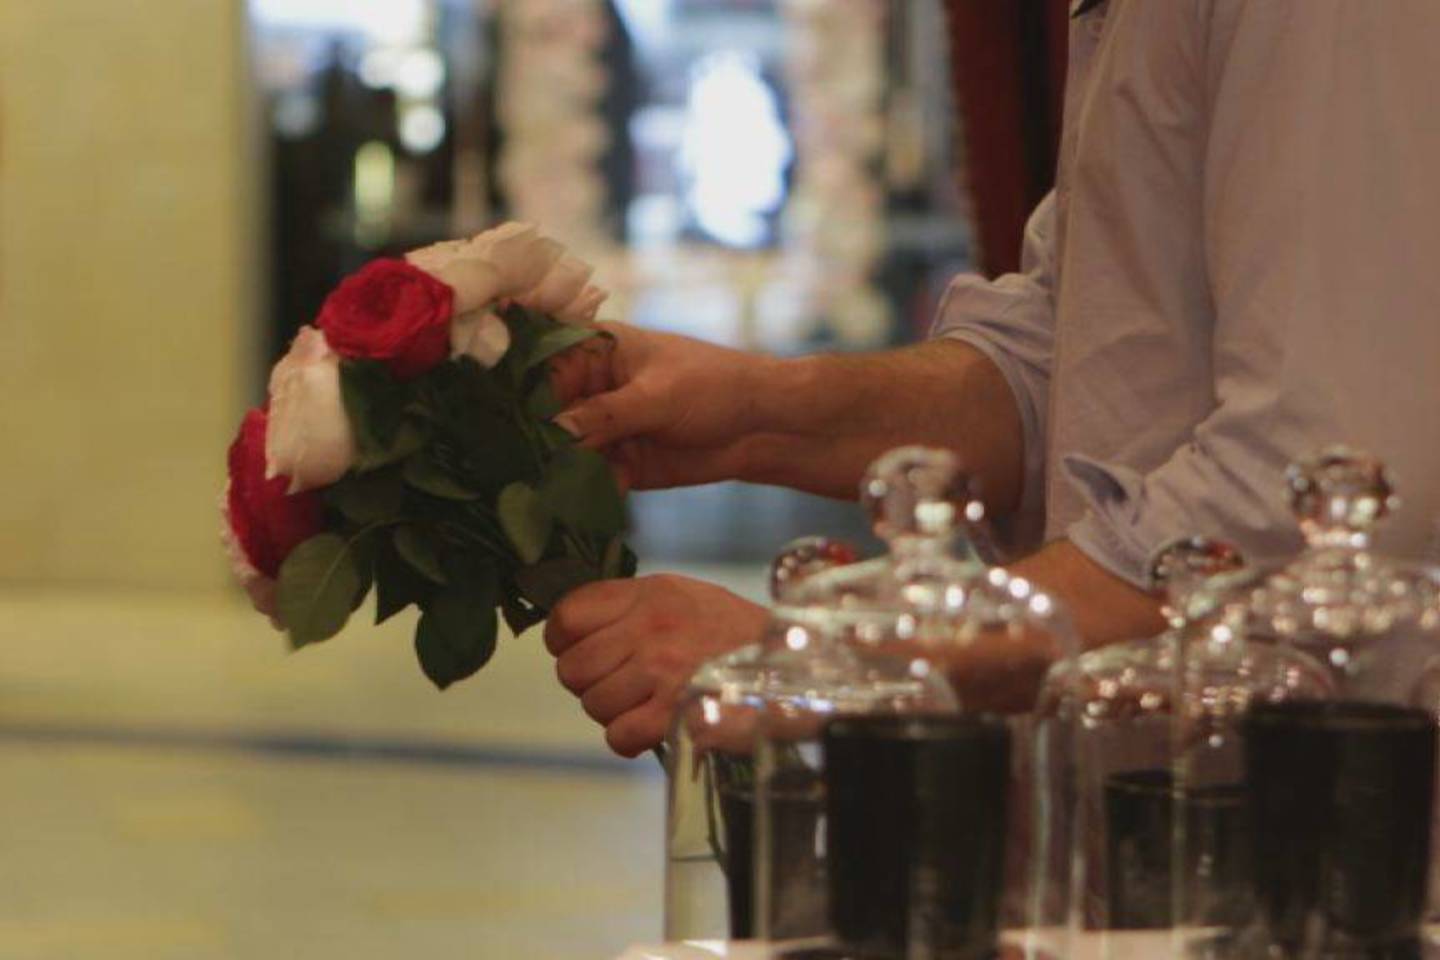  Gėlių ir kvapų salono įkūrėjas floristas Mantas Petruškevičius savo darbą vadina mylima veikla.